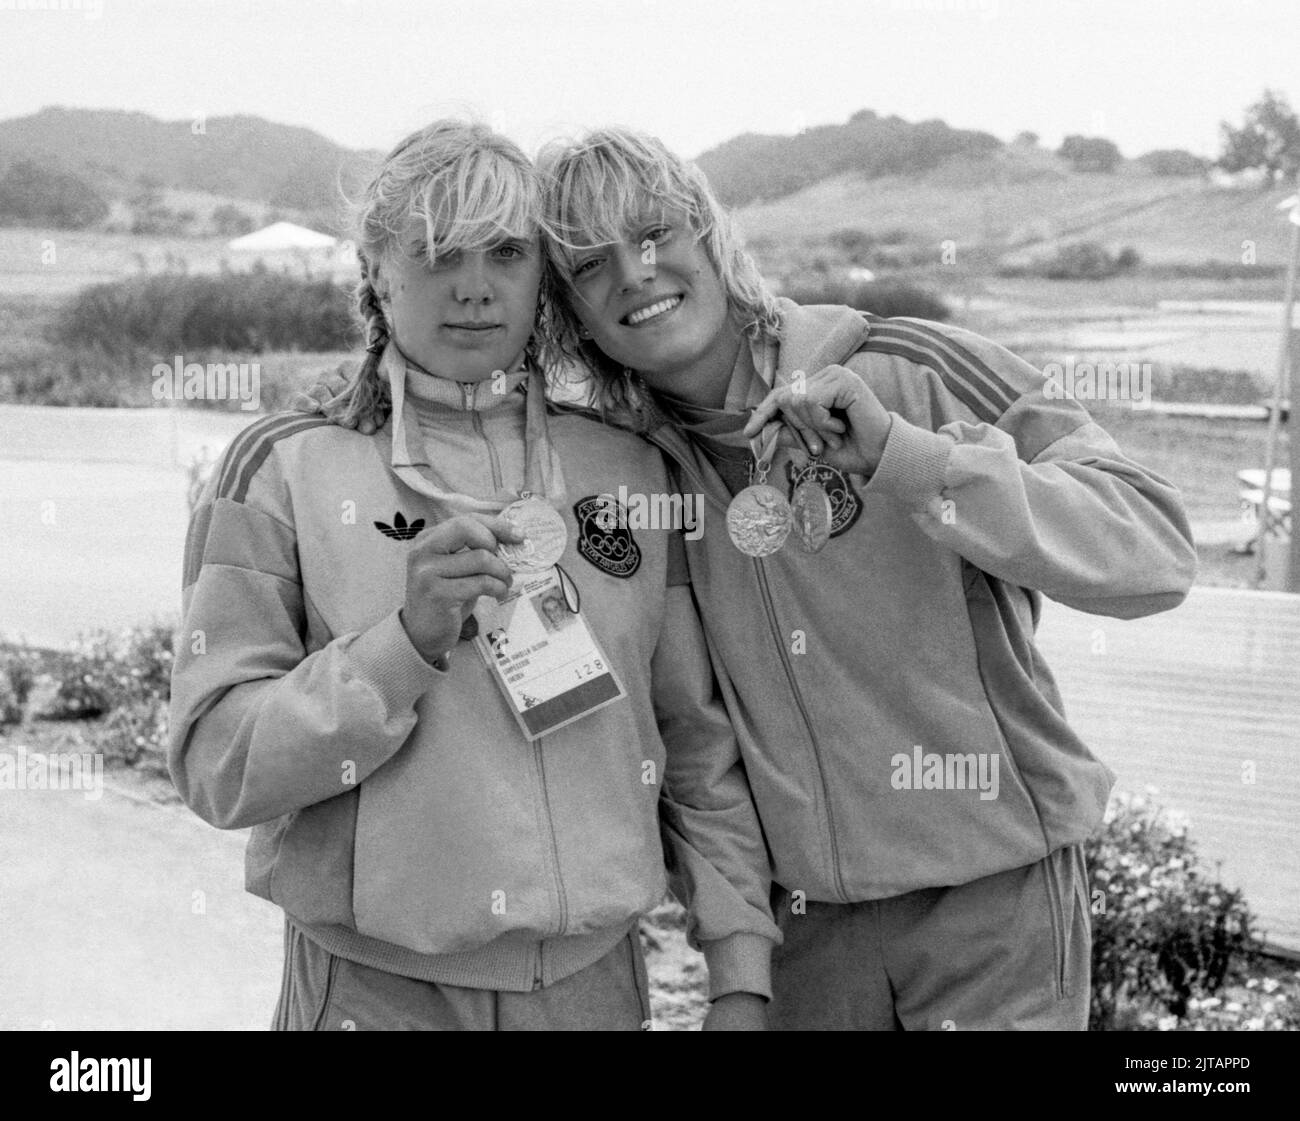 JUEGOS OLÍMPICOS DE VERANO EN LOS ÁNGELES 1984 ANNA OLSSON y Agneta Andersson atleta de canoa Suecia con sus medallas de oro a partir de K2 500 m. Foto de stock